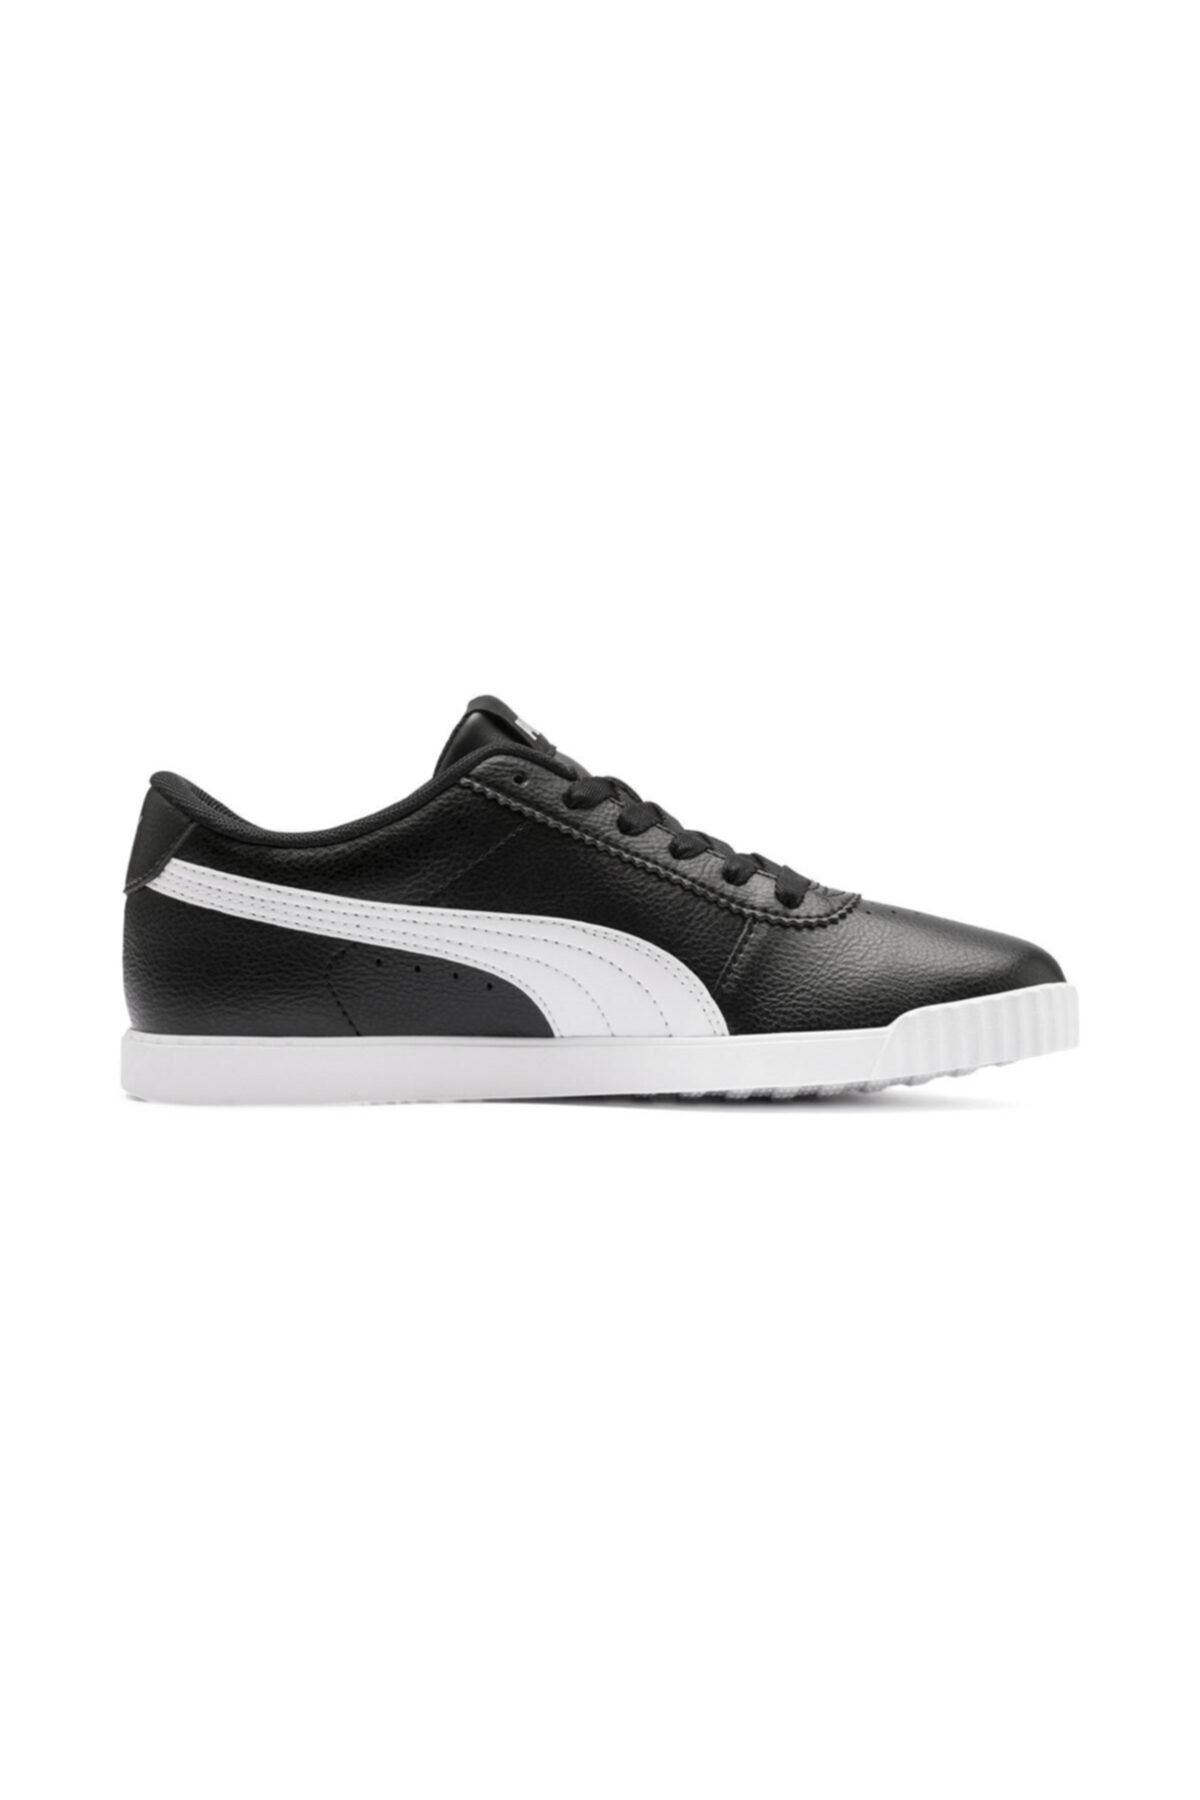 Puma Carina Slim Sl 370548 01 Kadın Siyah-beyaz Spor Ayakkabısı